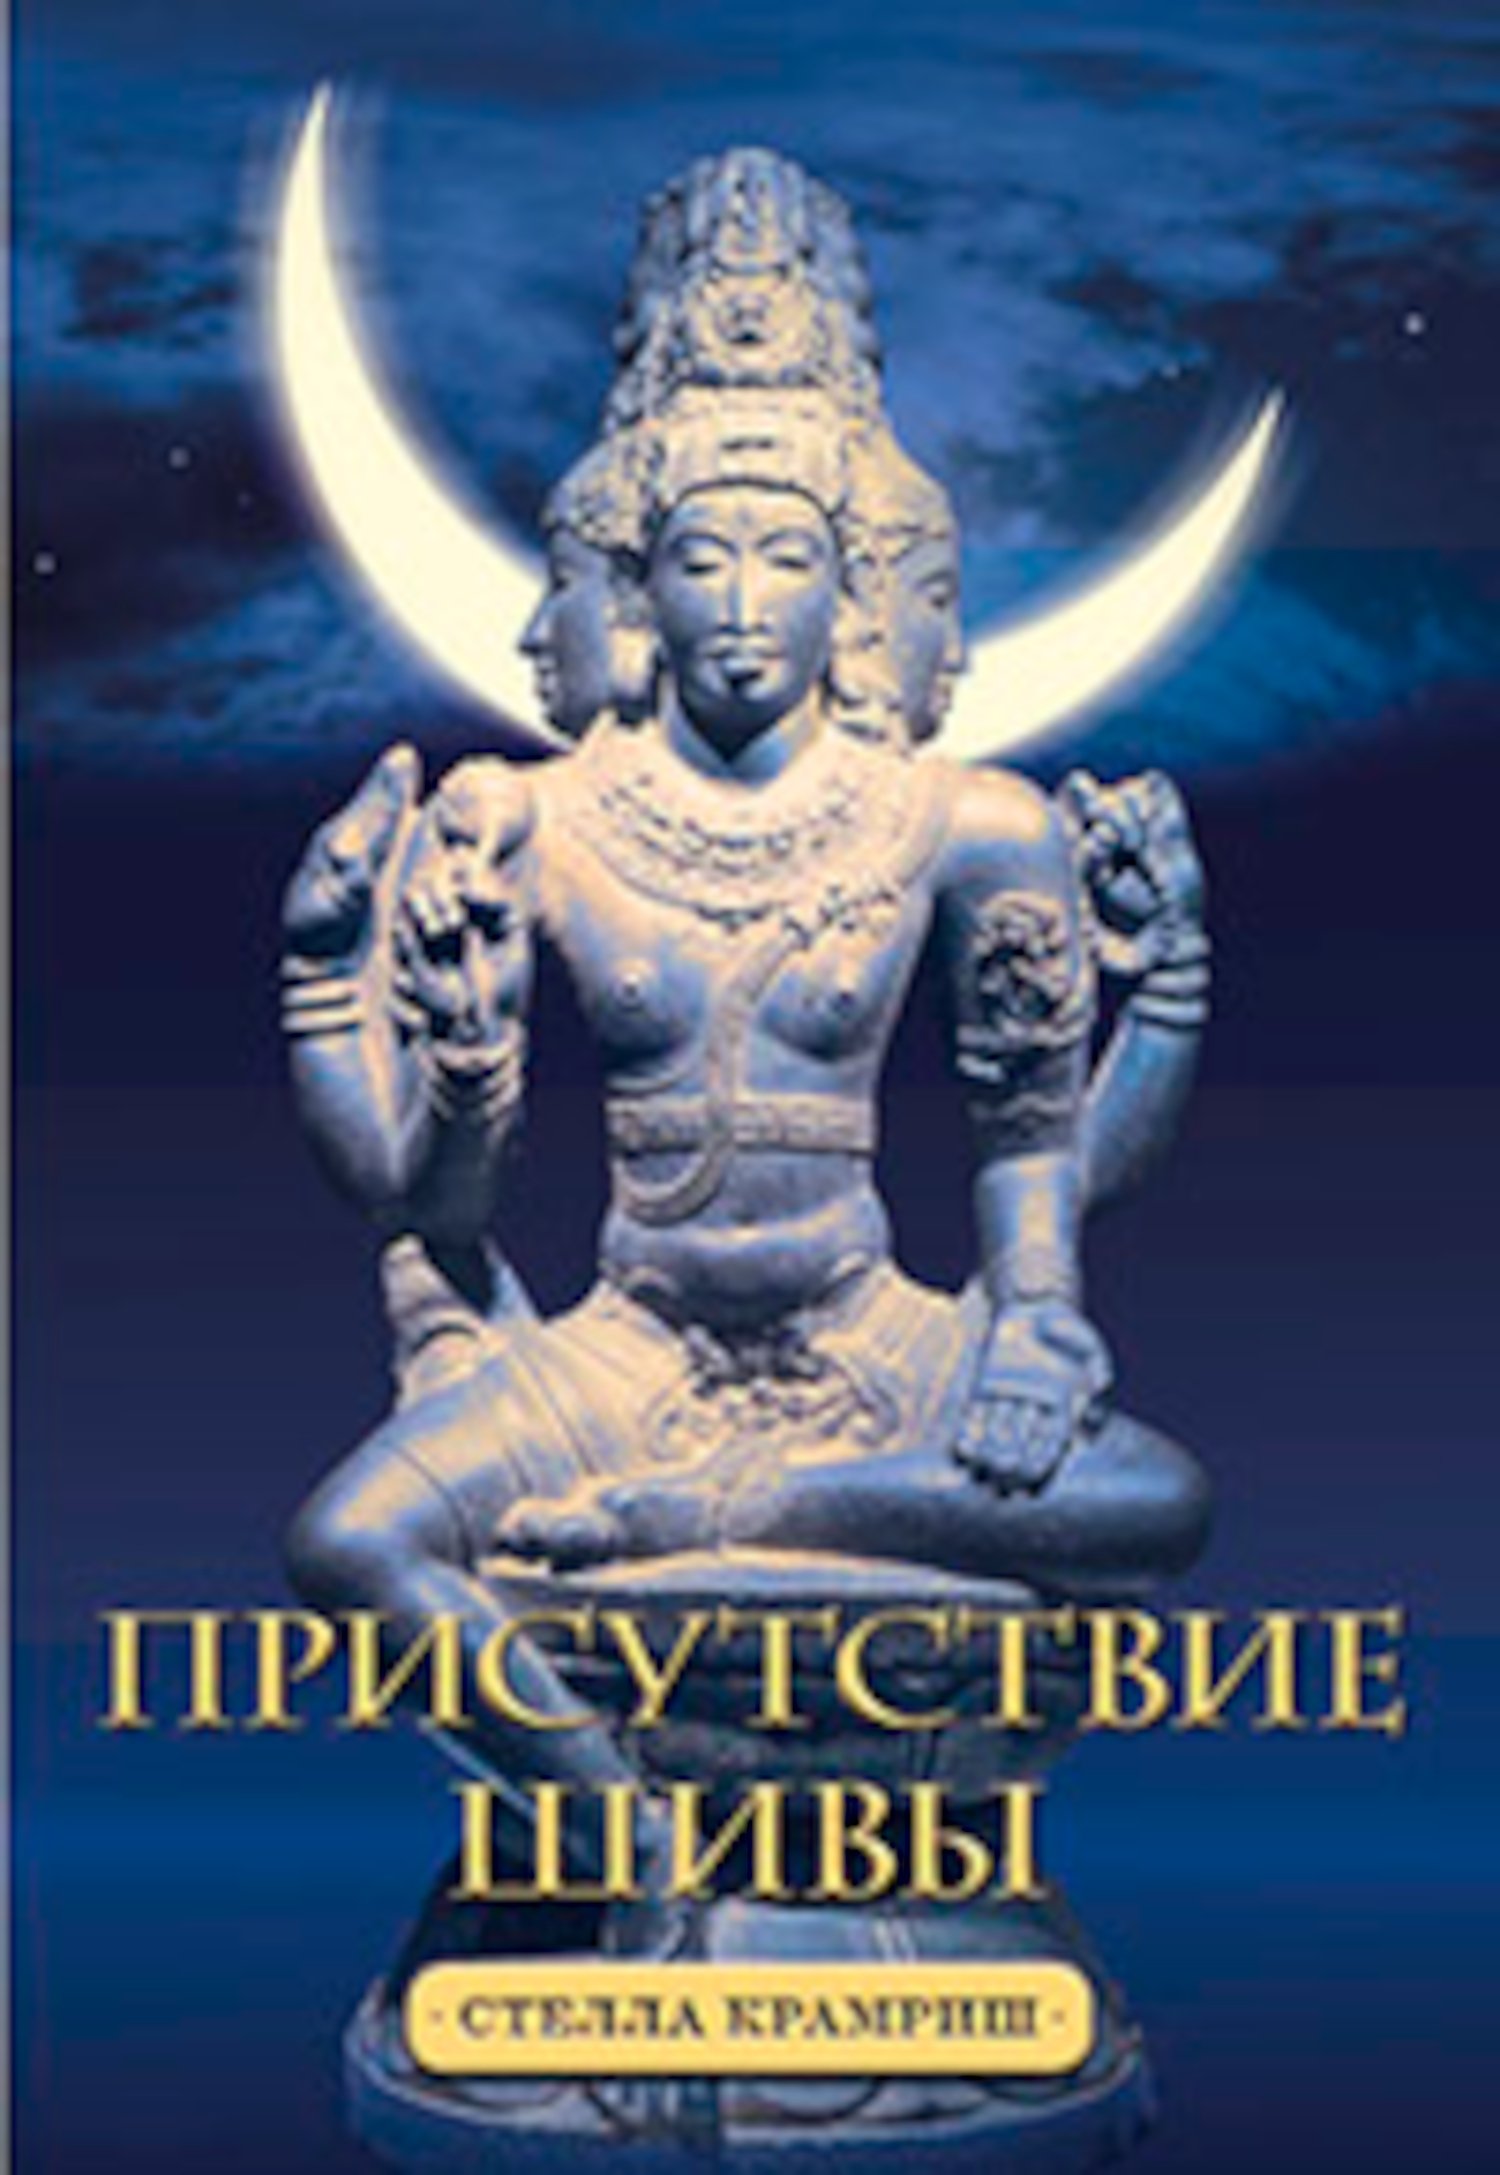 Купить книгу Присутствие Шивы Крамриш С. в интернет-магазине Ариаварта